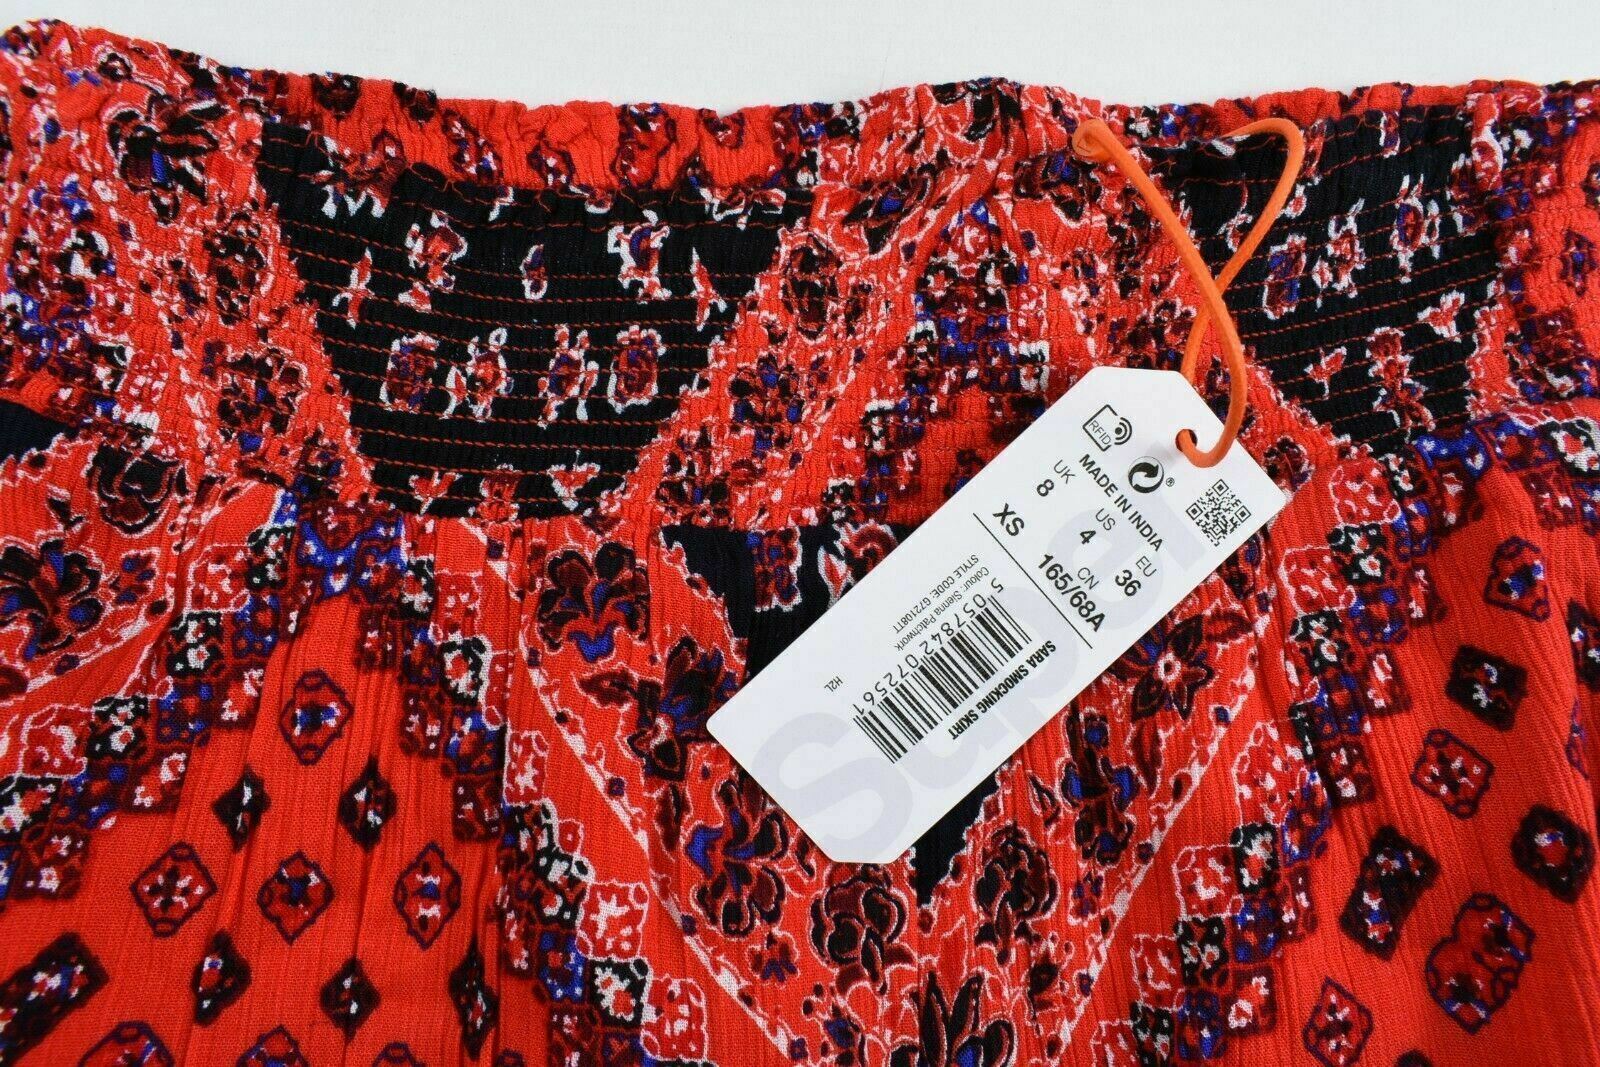 SUPERDRY Women's SARA Smocking Skirt, Siena Red Patchwork, size XS / UK 8